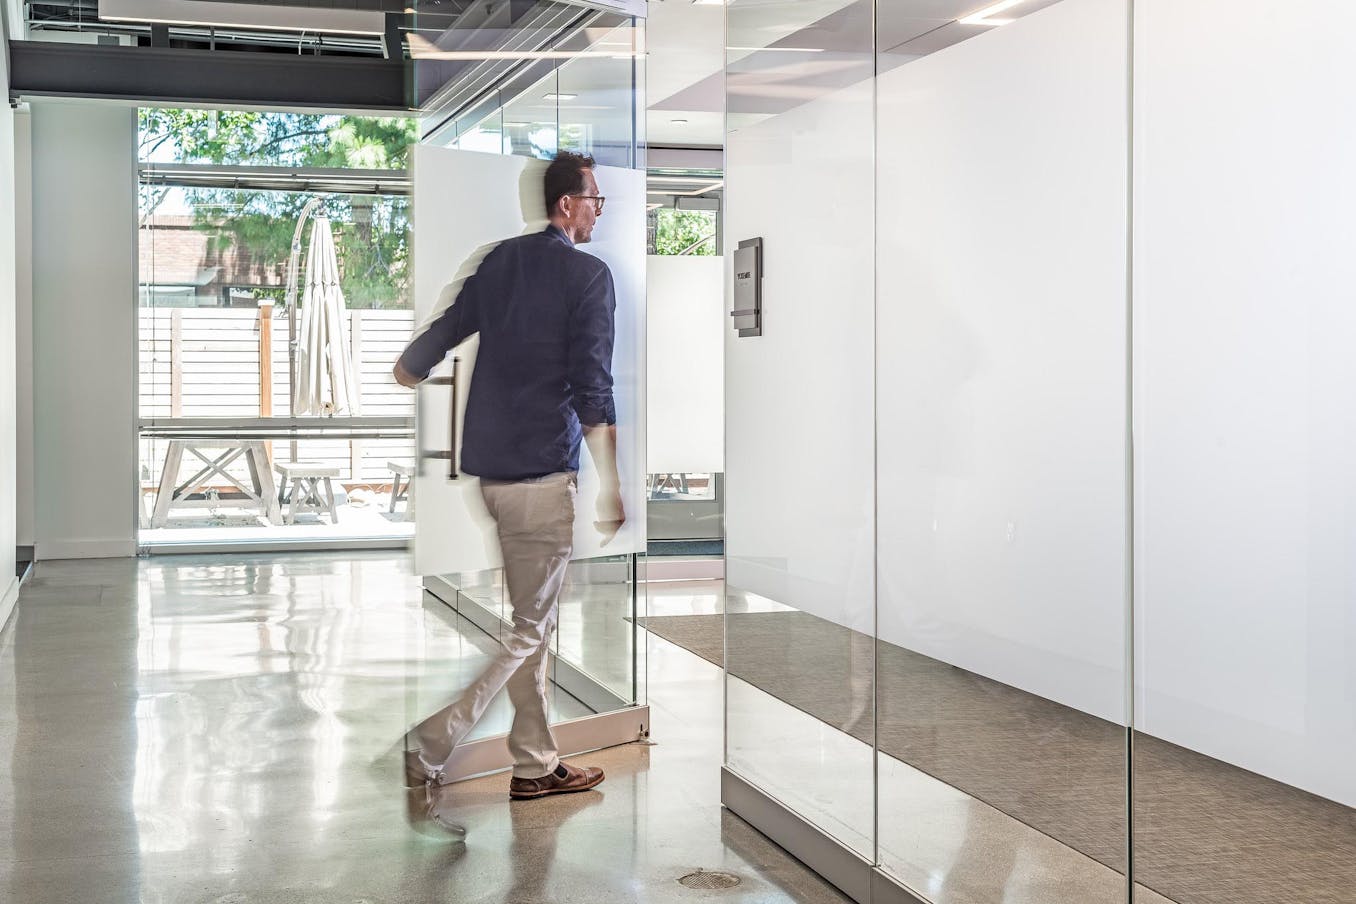 A man walking through a white glass door in an office